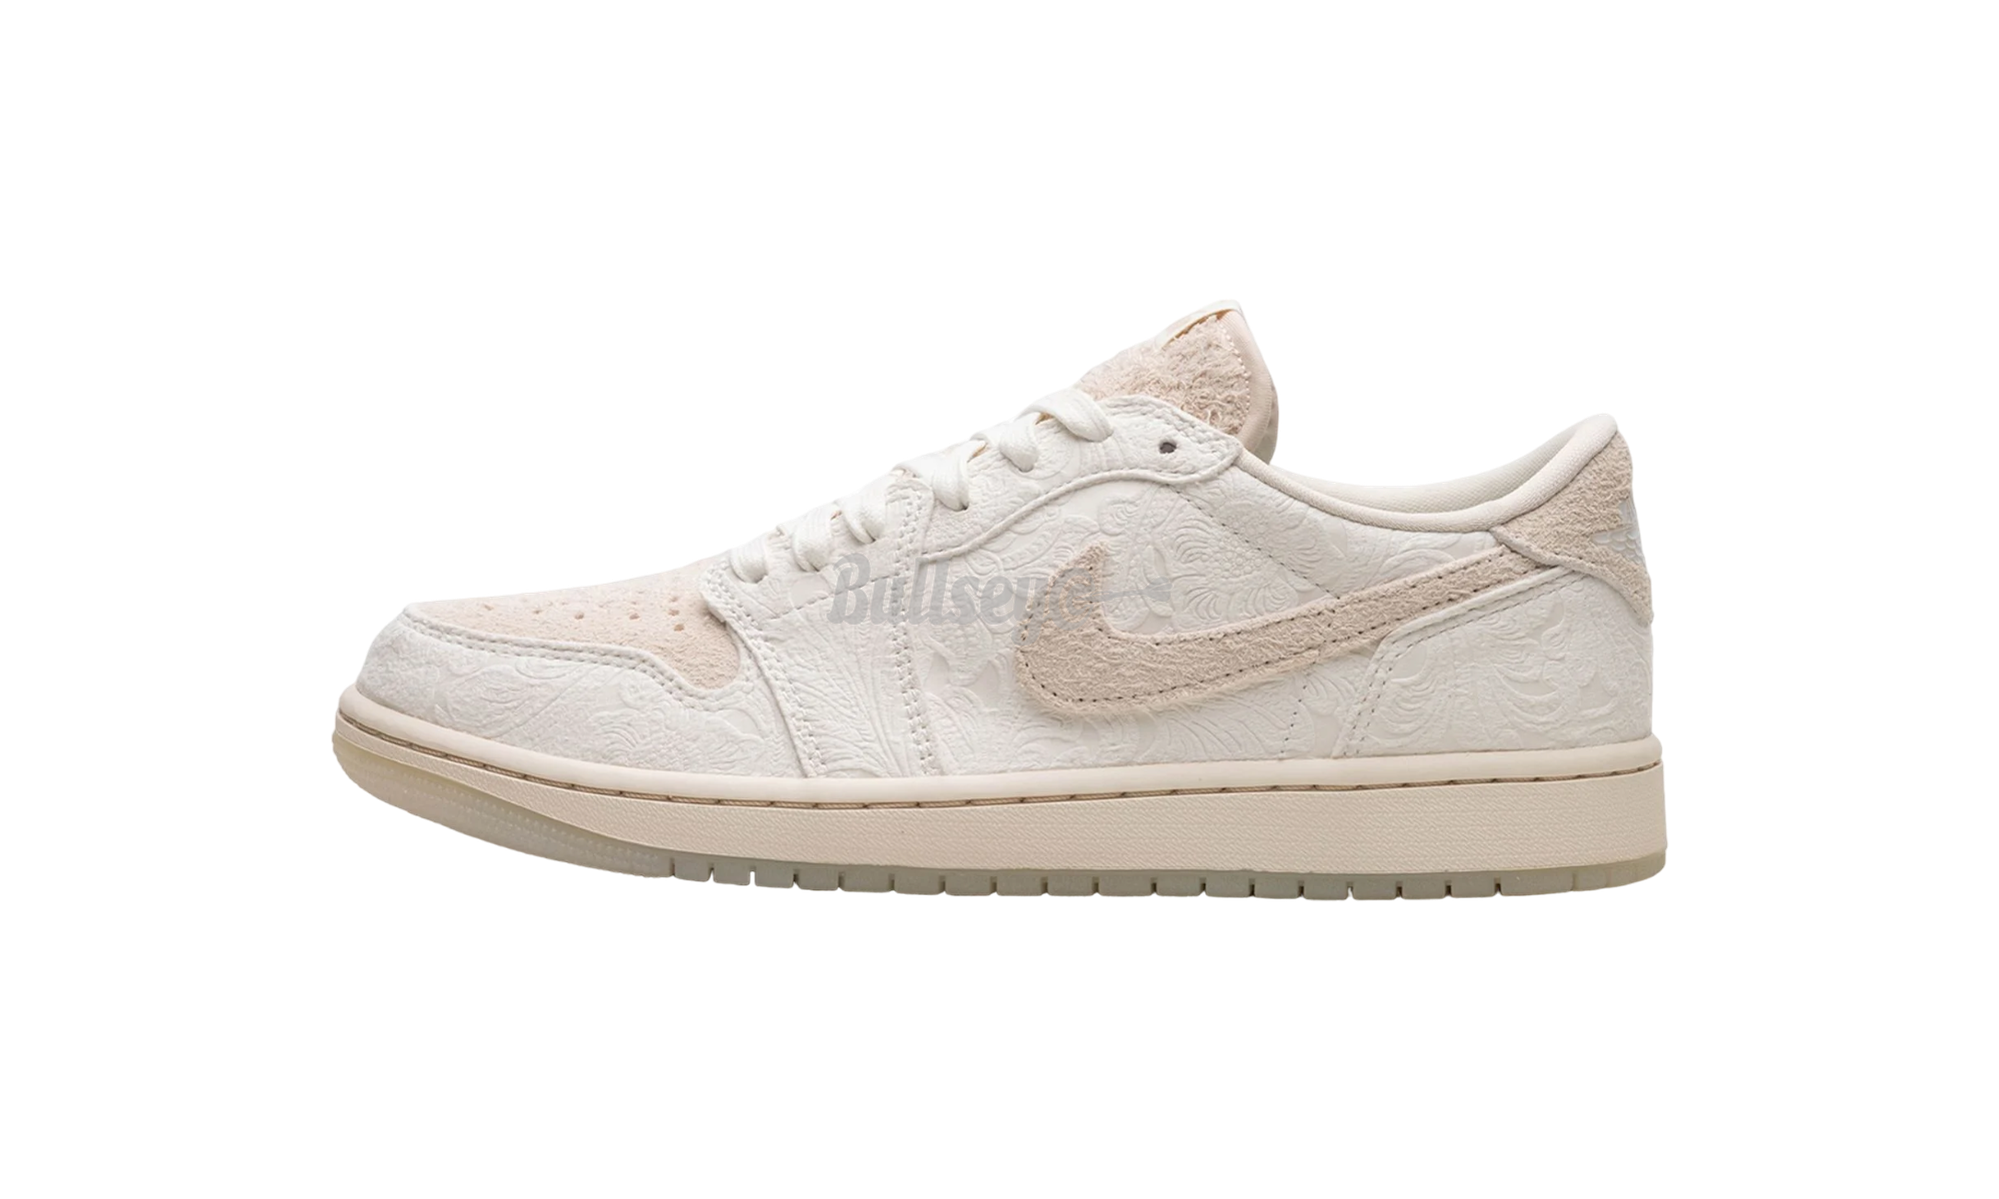 Size 11 – Bullseye Sneaker Boutique